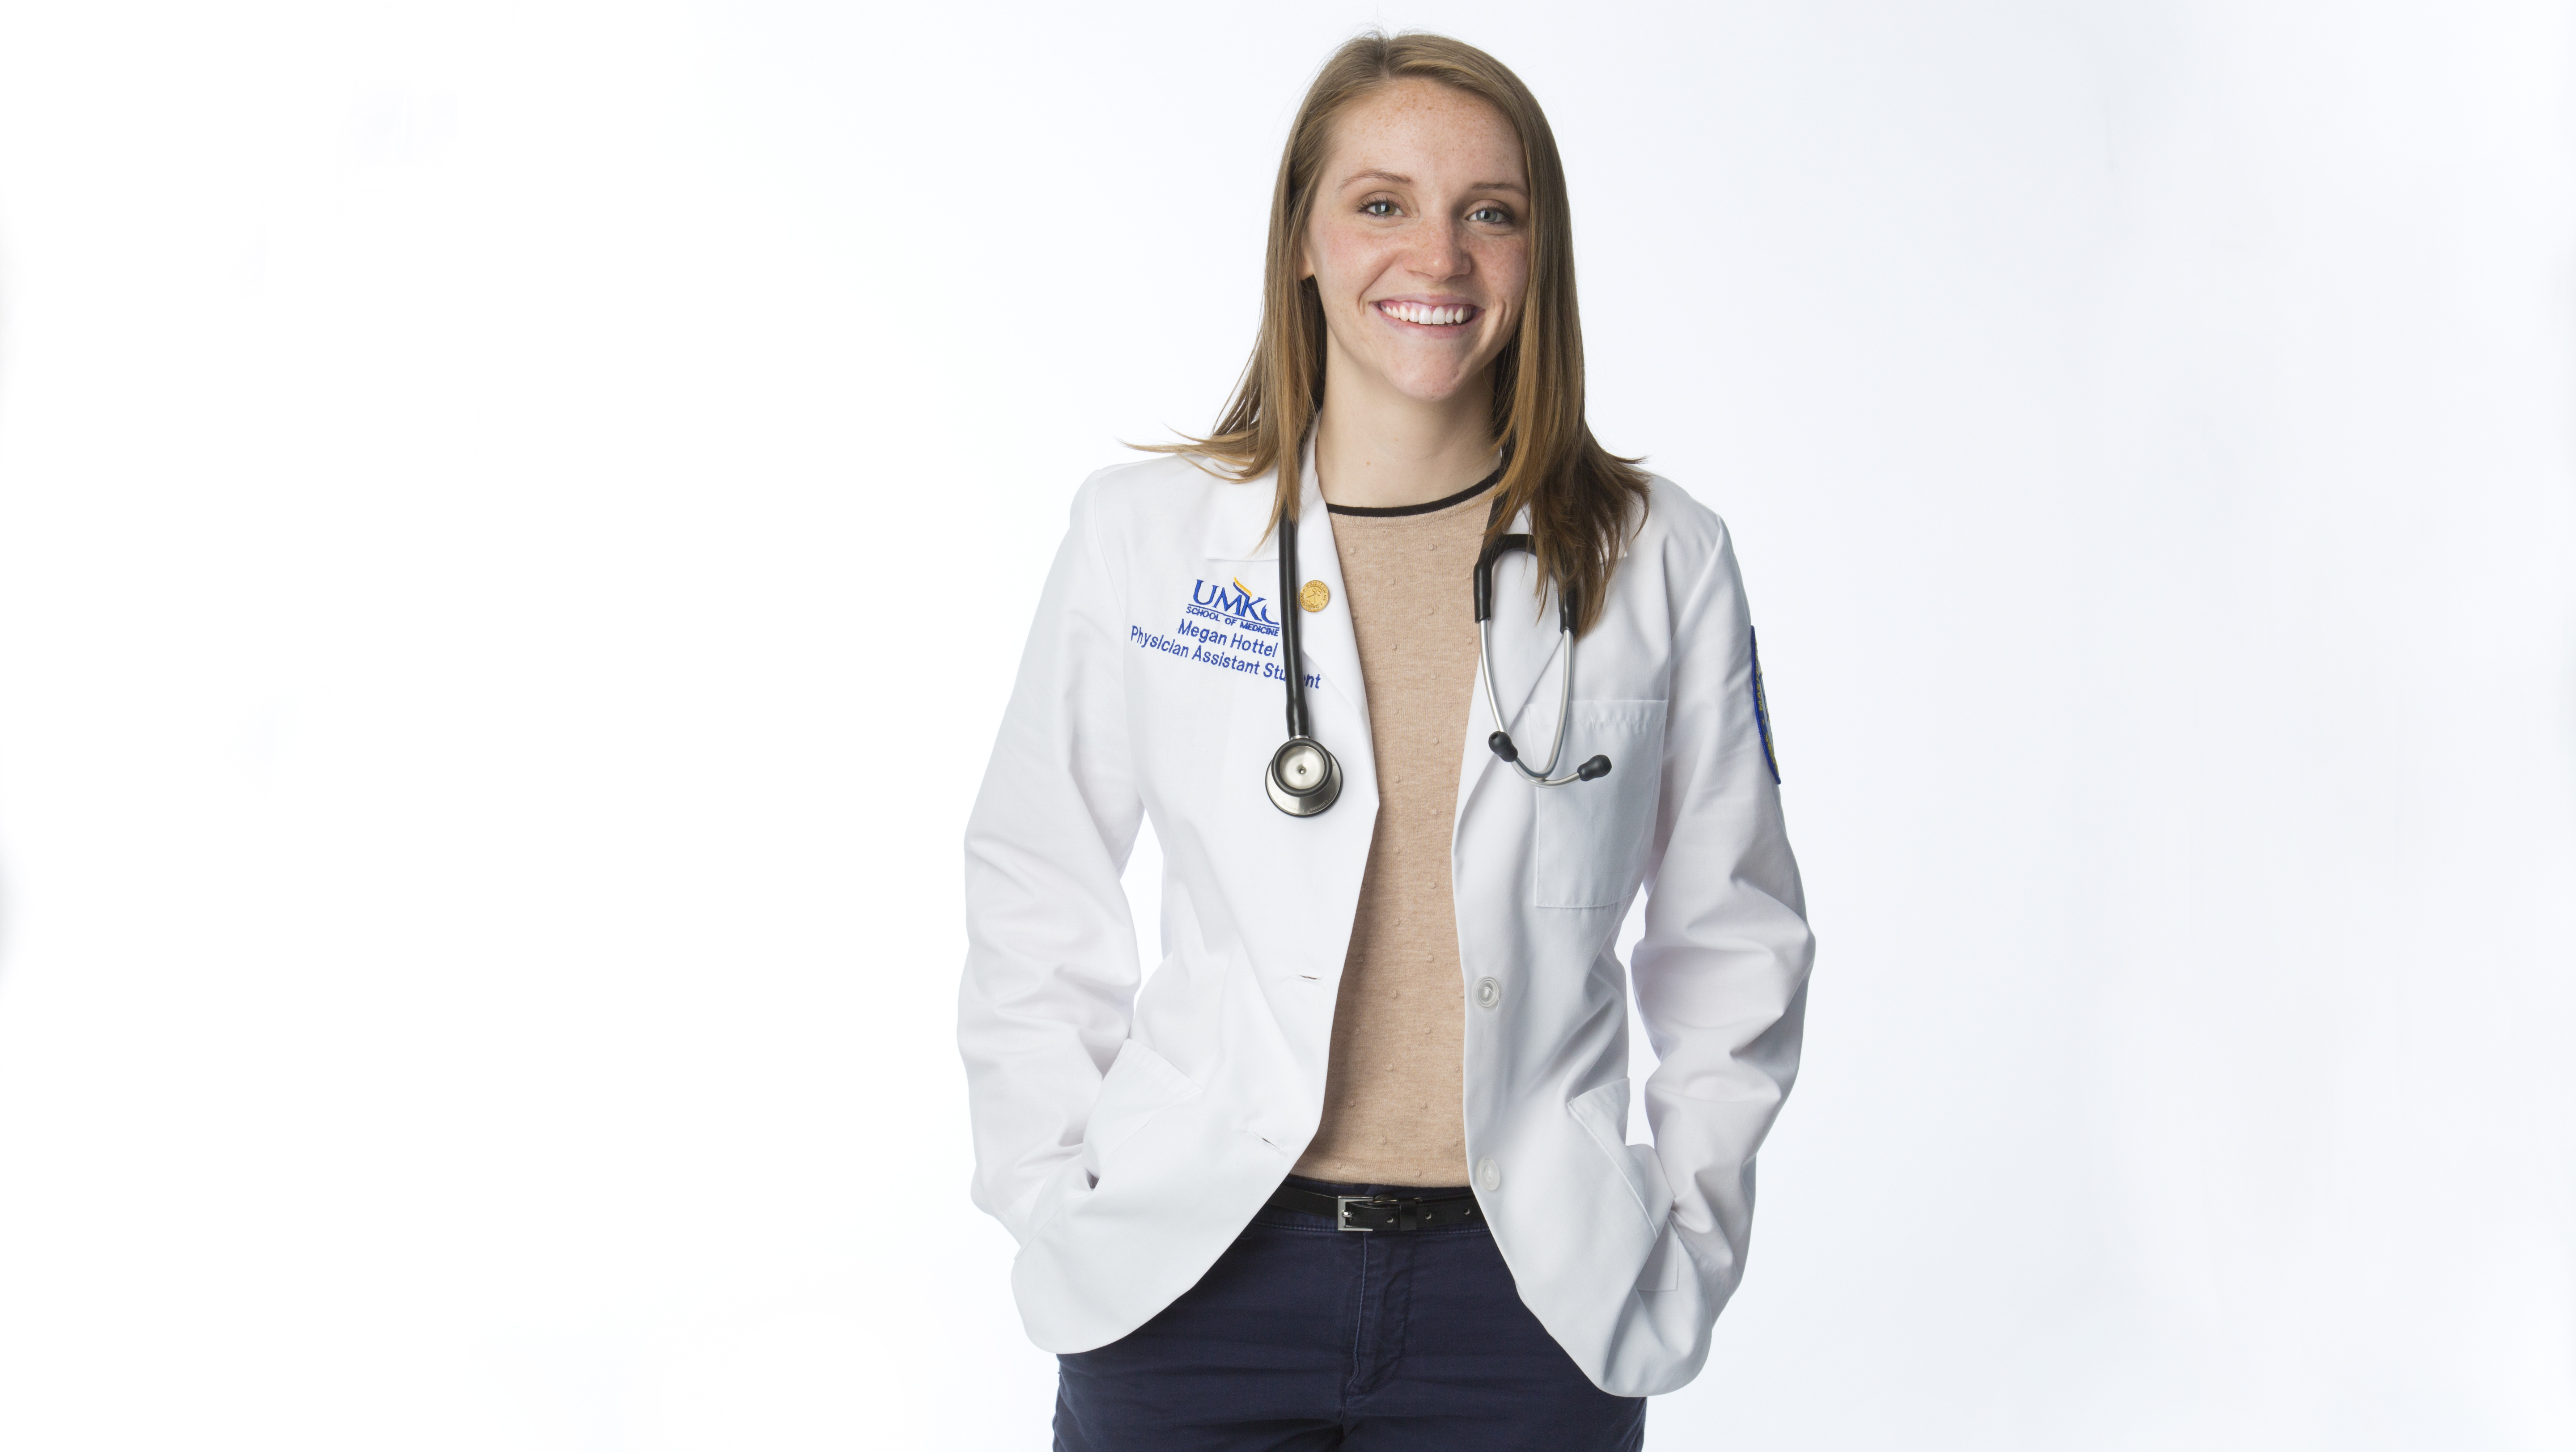 UMKC medical student Megan Hottel portrait